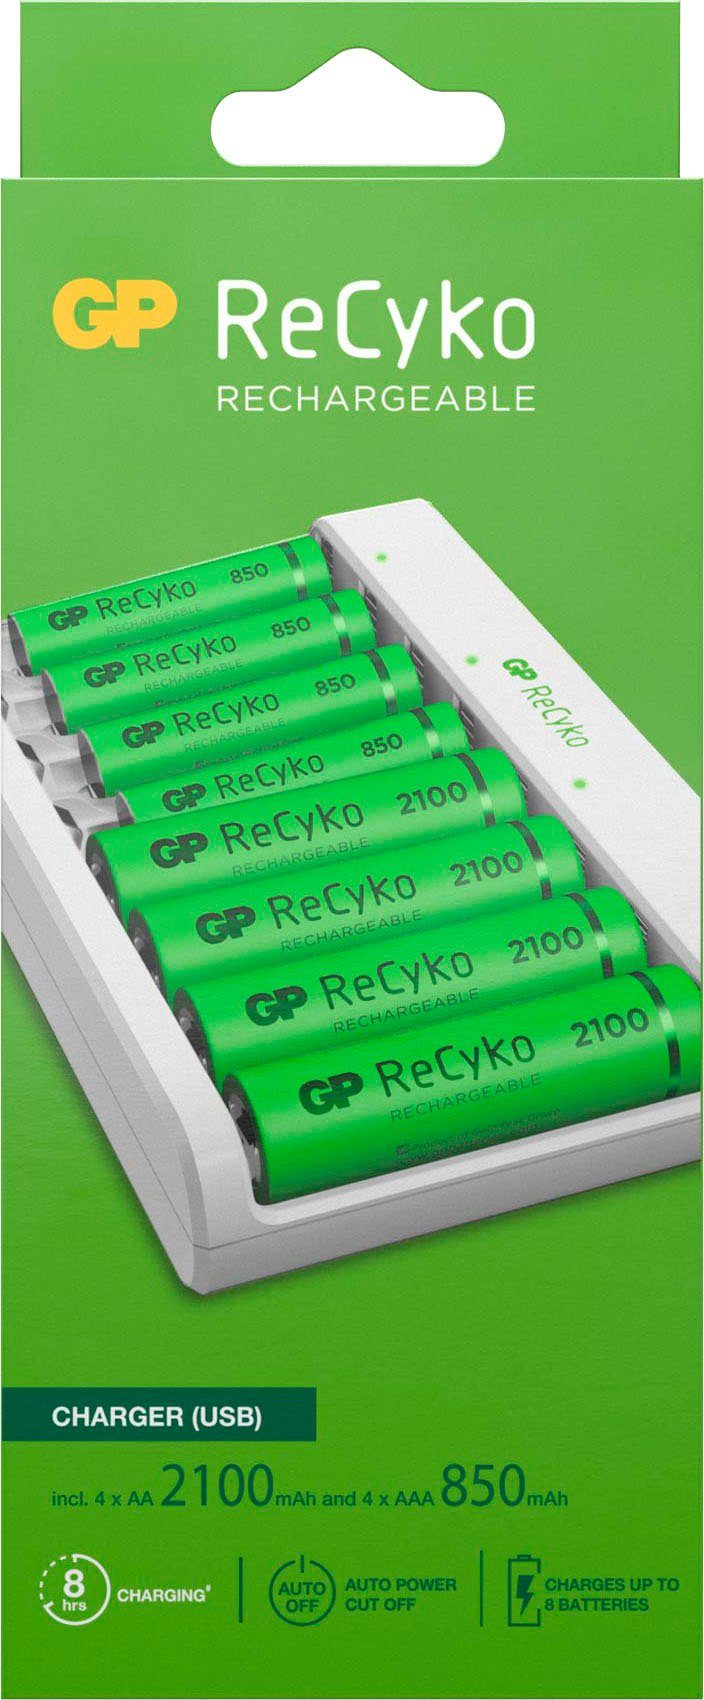 x mAh ReCyko AAA ReCyko mit 850 2100 mAh Batteries ReCyko GP 4 E811 und x Batterie-Ladegerät AA 4